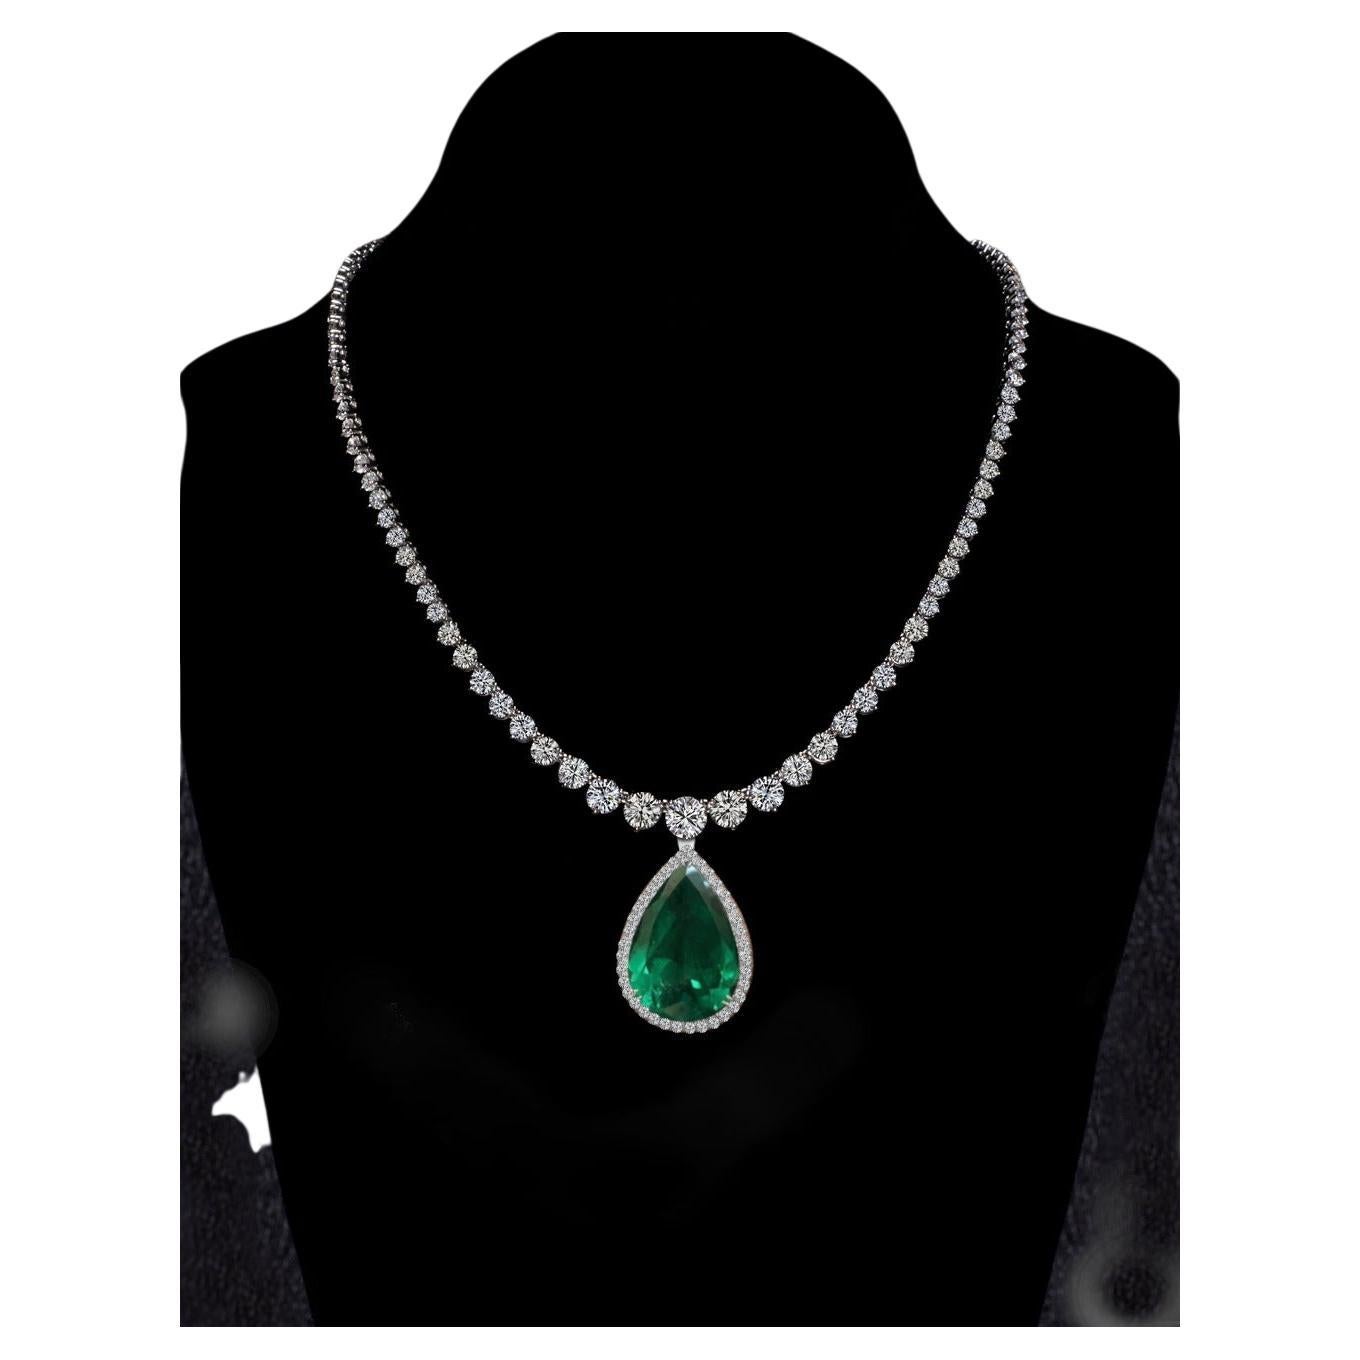 38 Carat Round Brilliant Cut Diamond Pear Cut Emerald Necklace